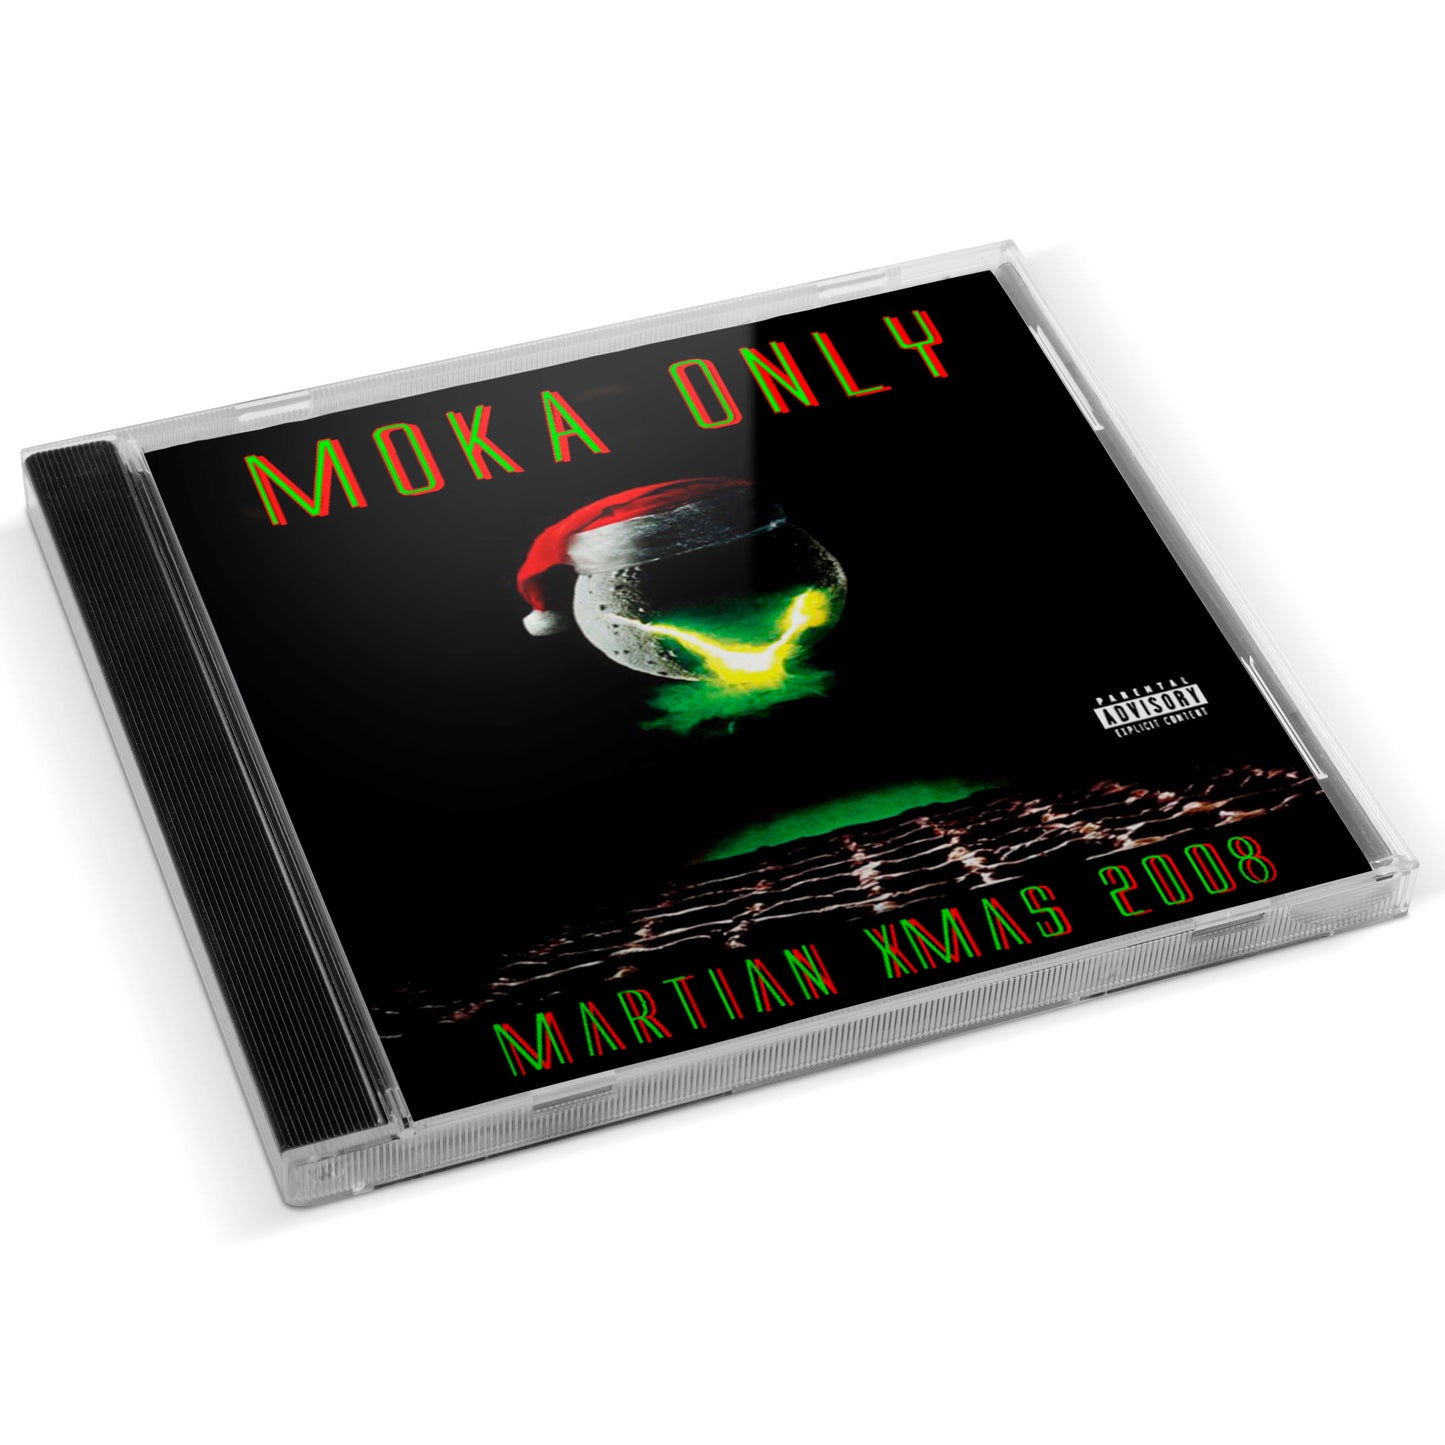 Moka Only - Martian Xmas 2008 CD